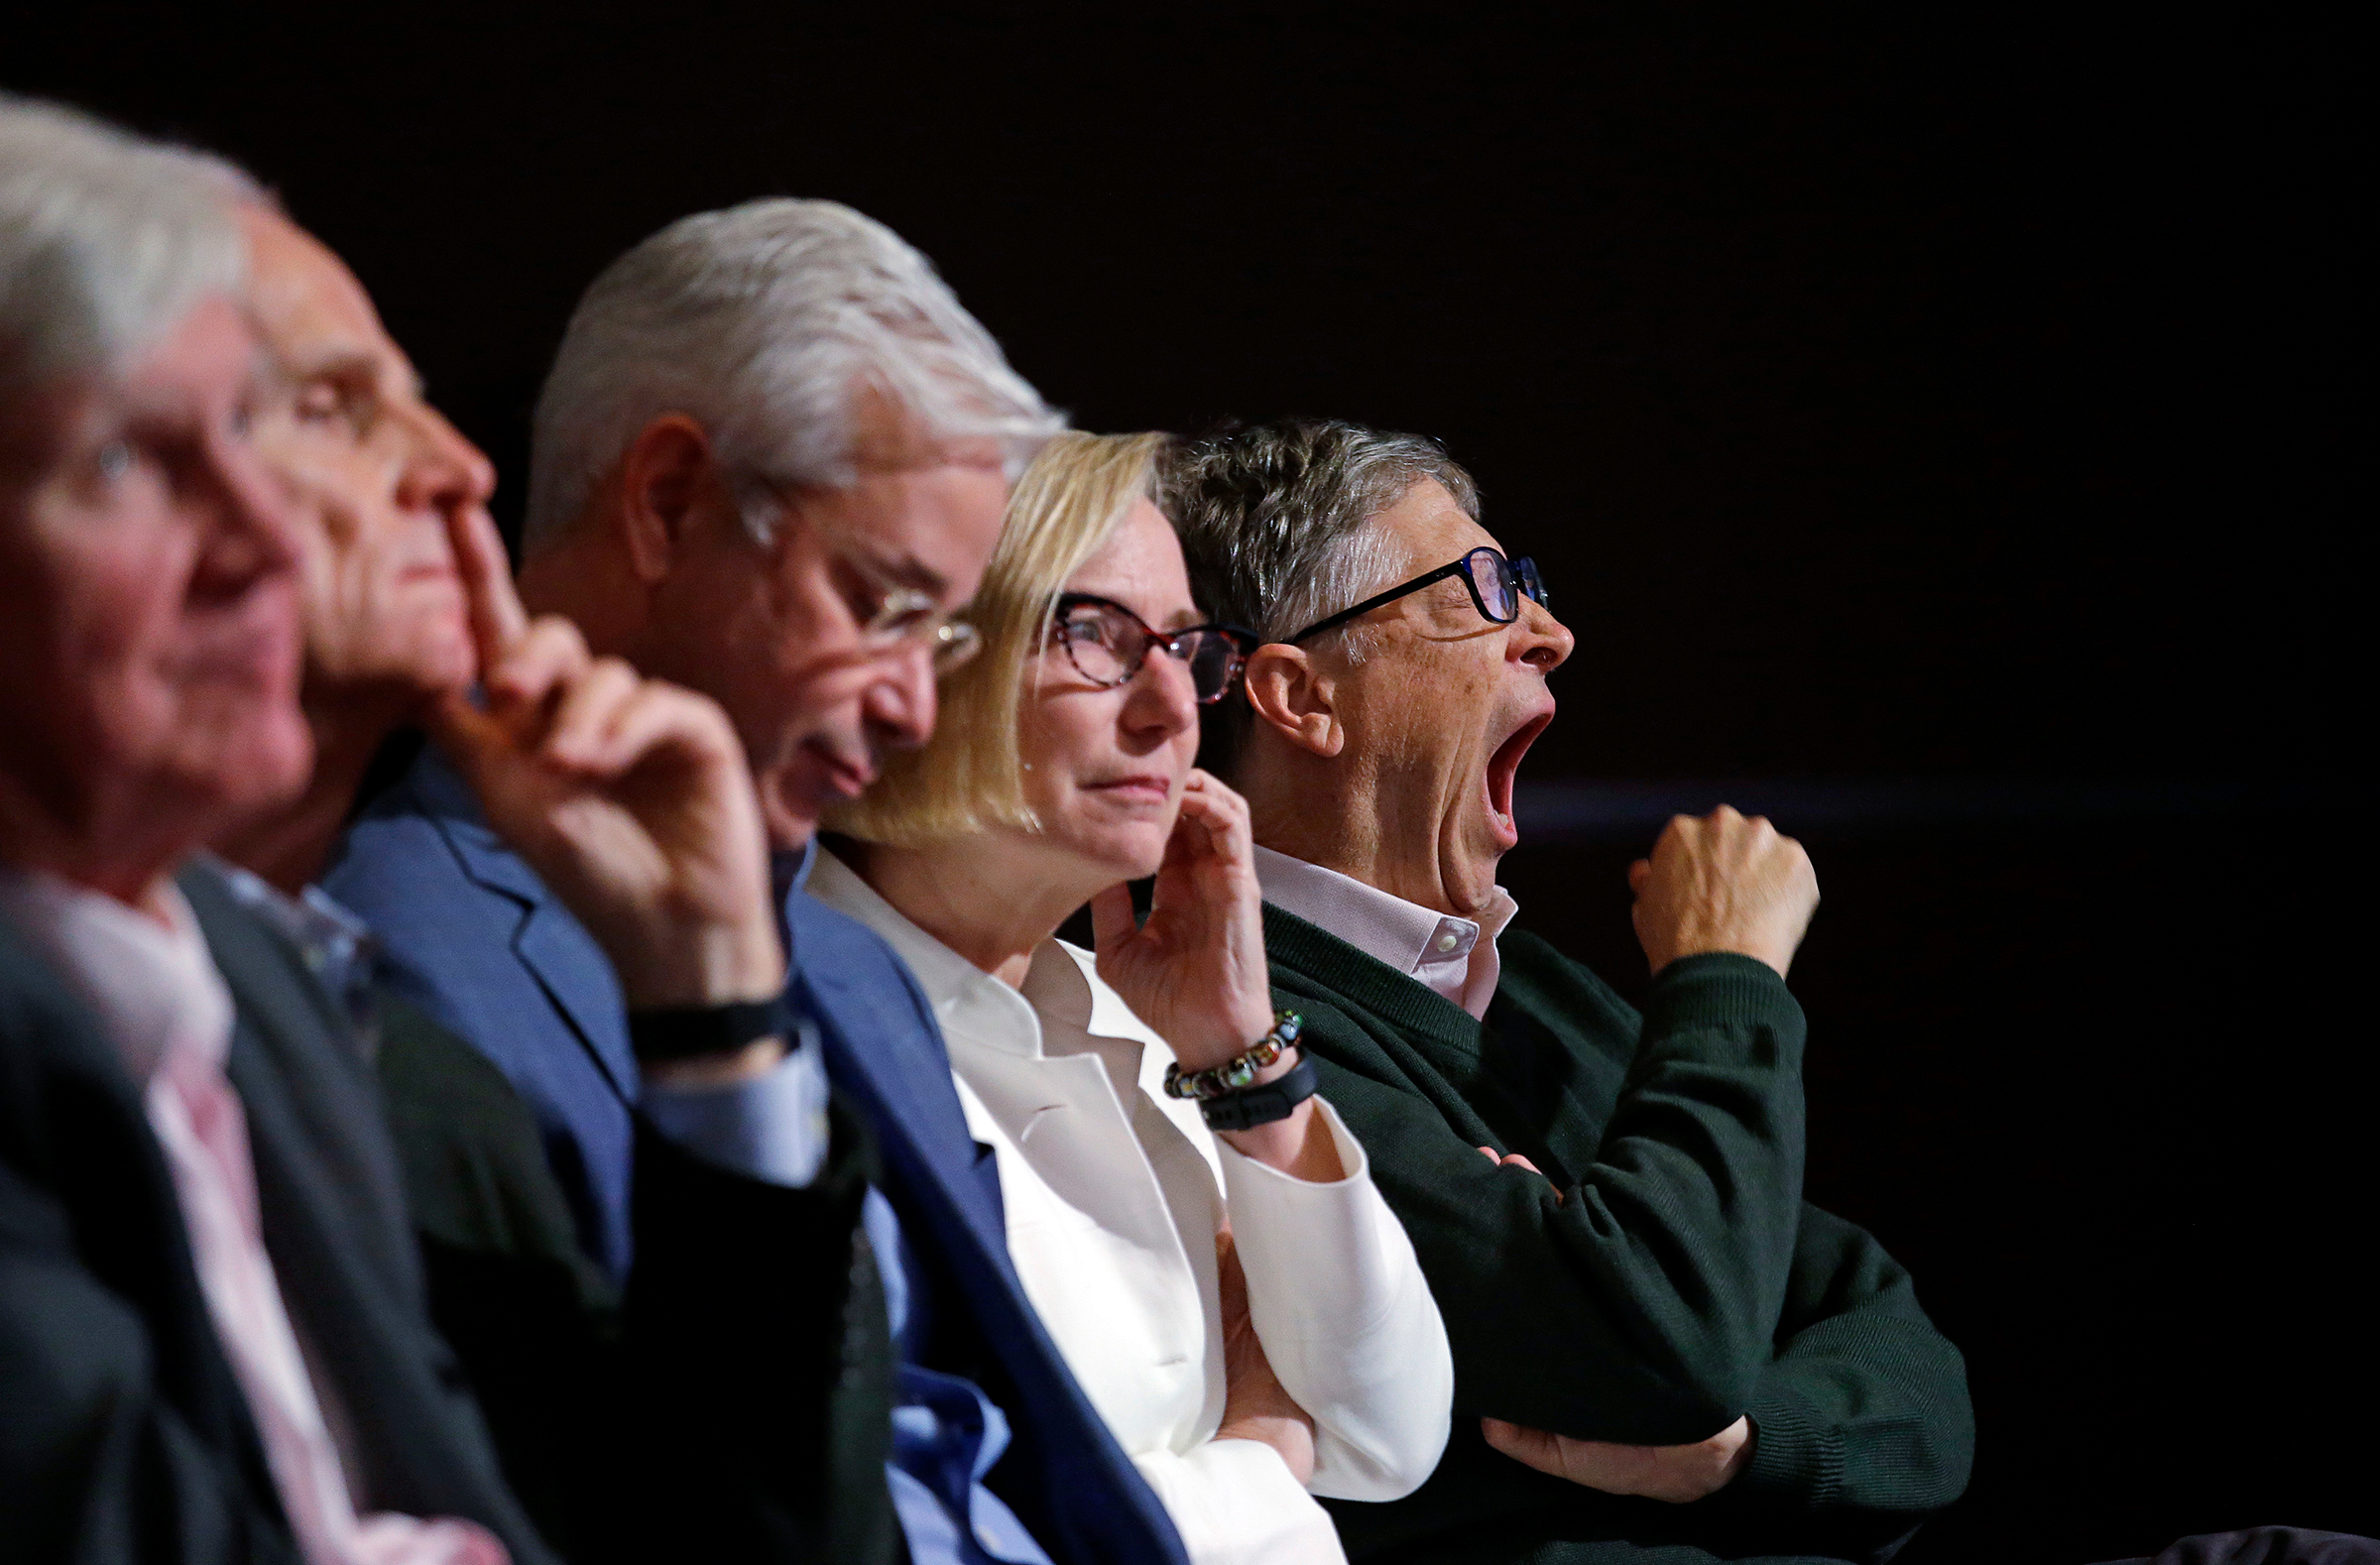 Основатель Microsoft Билл Гейтс (крайний справа) на собрании членов правления компании по итогам года.
